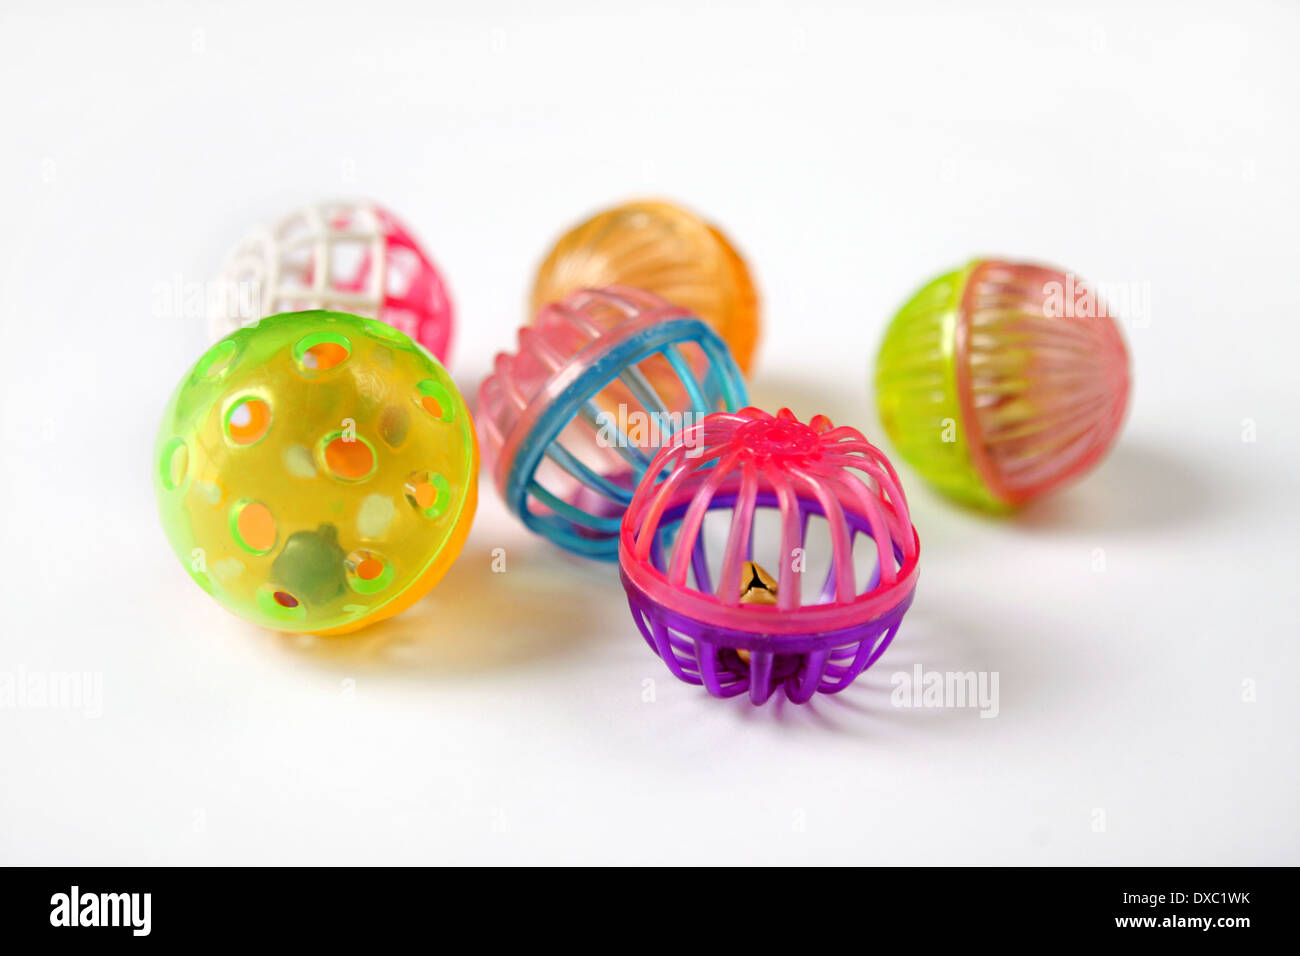 plastic cat balls